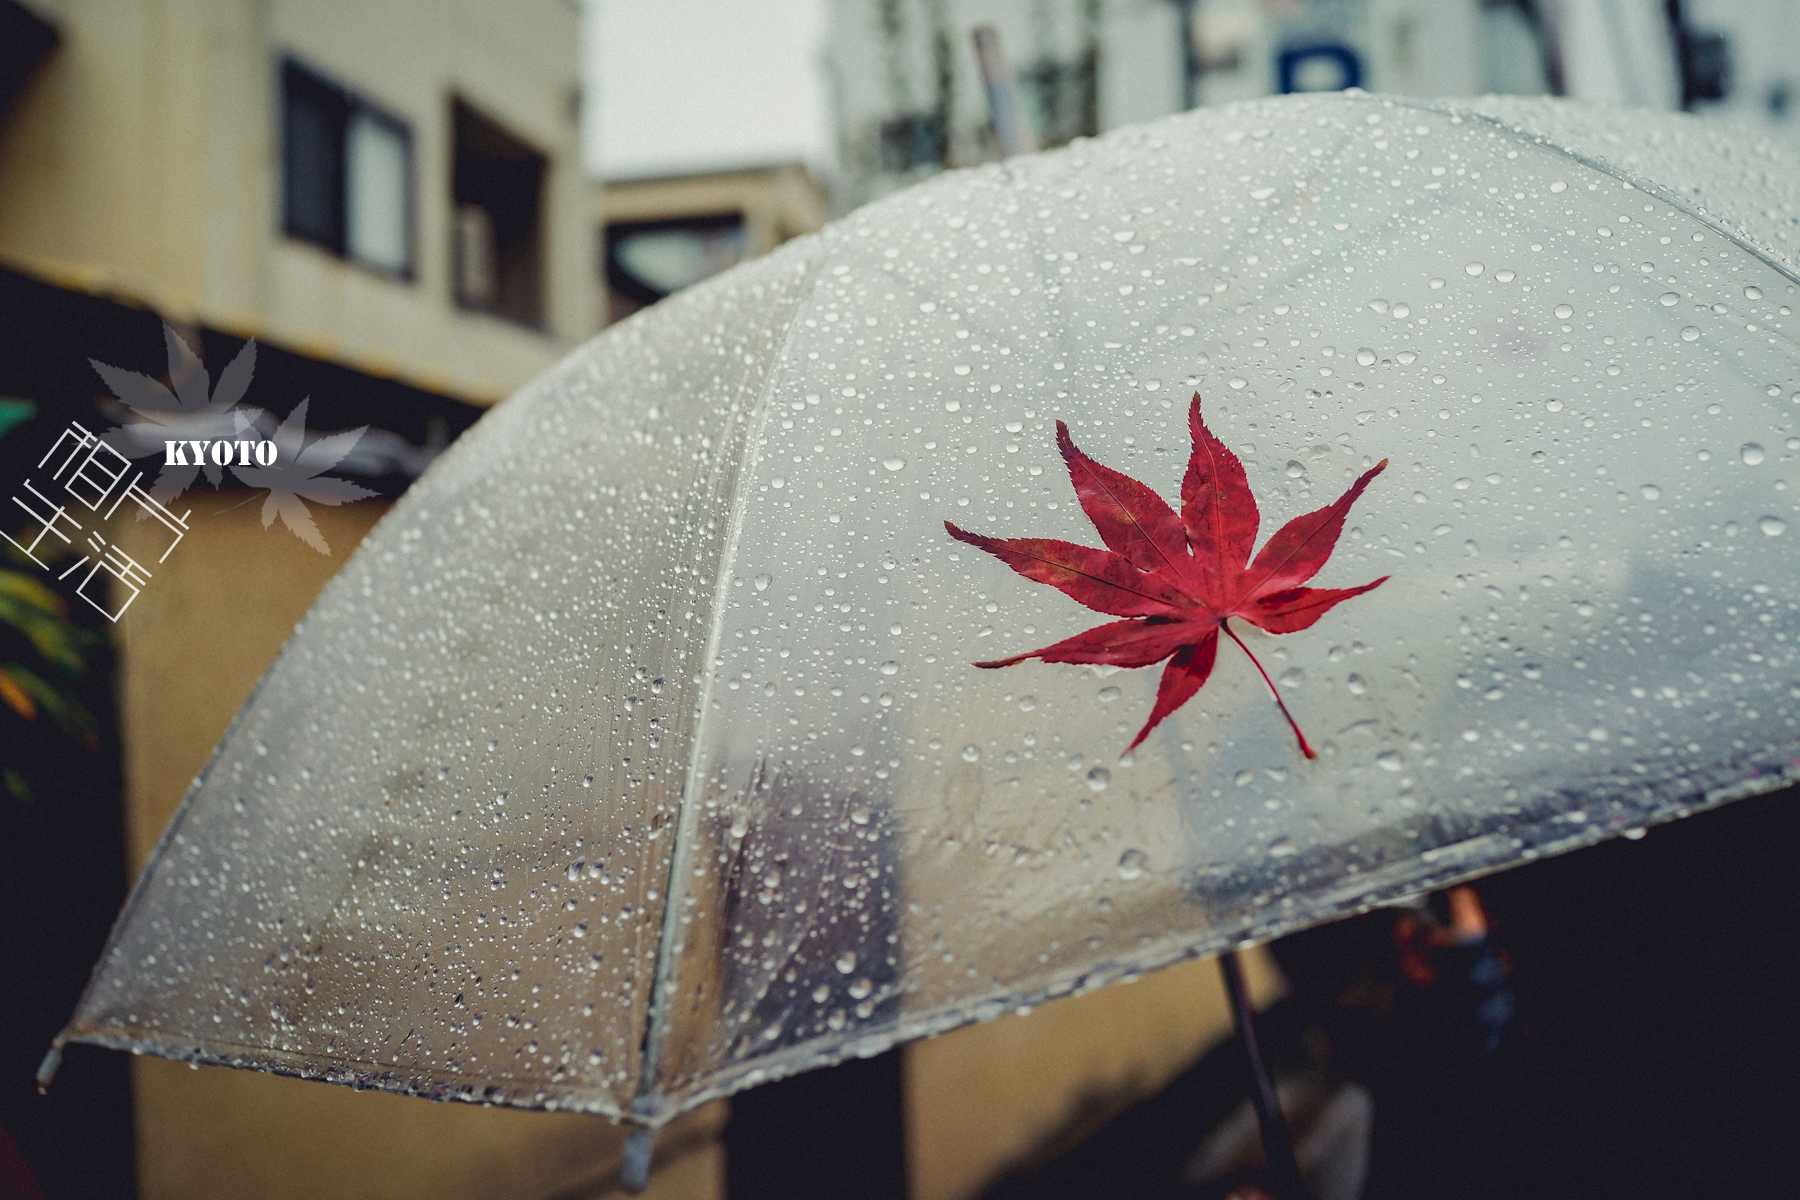 下雨天人人一把透明伞,把红叶贴在伞上,艺术感up